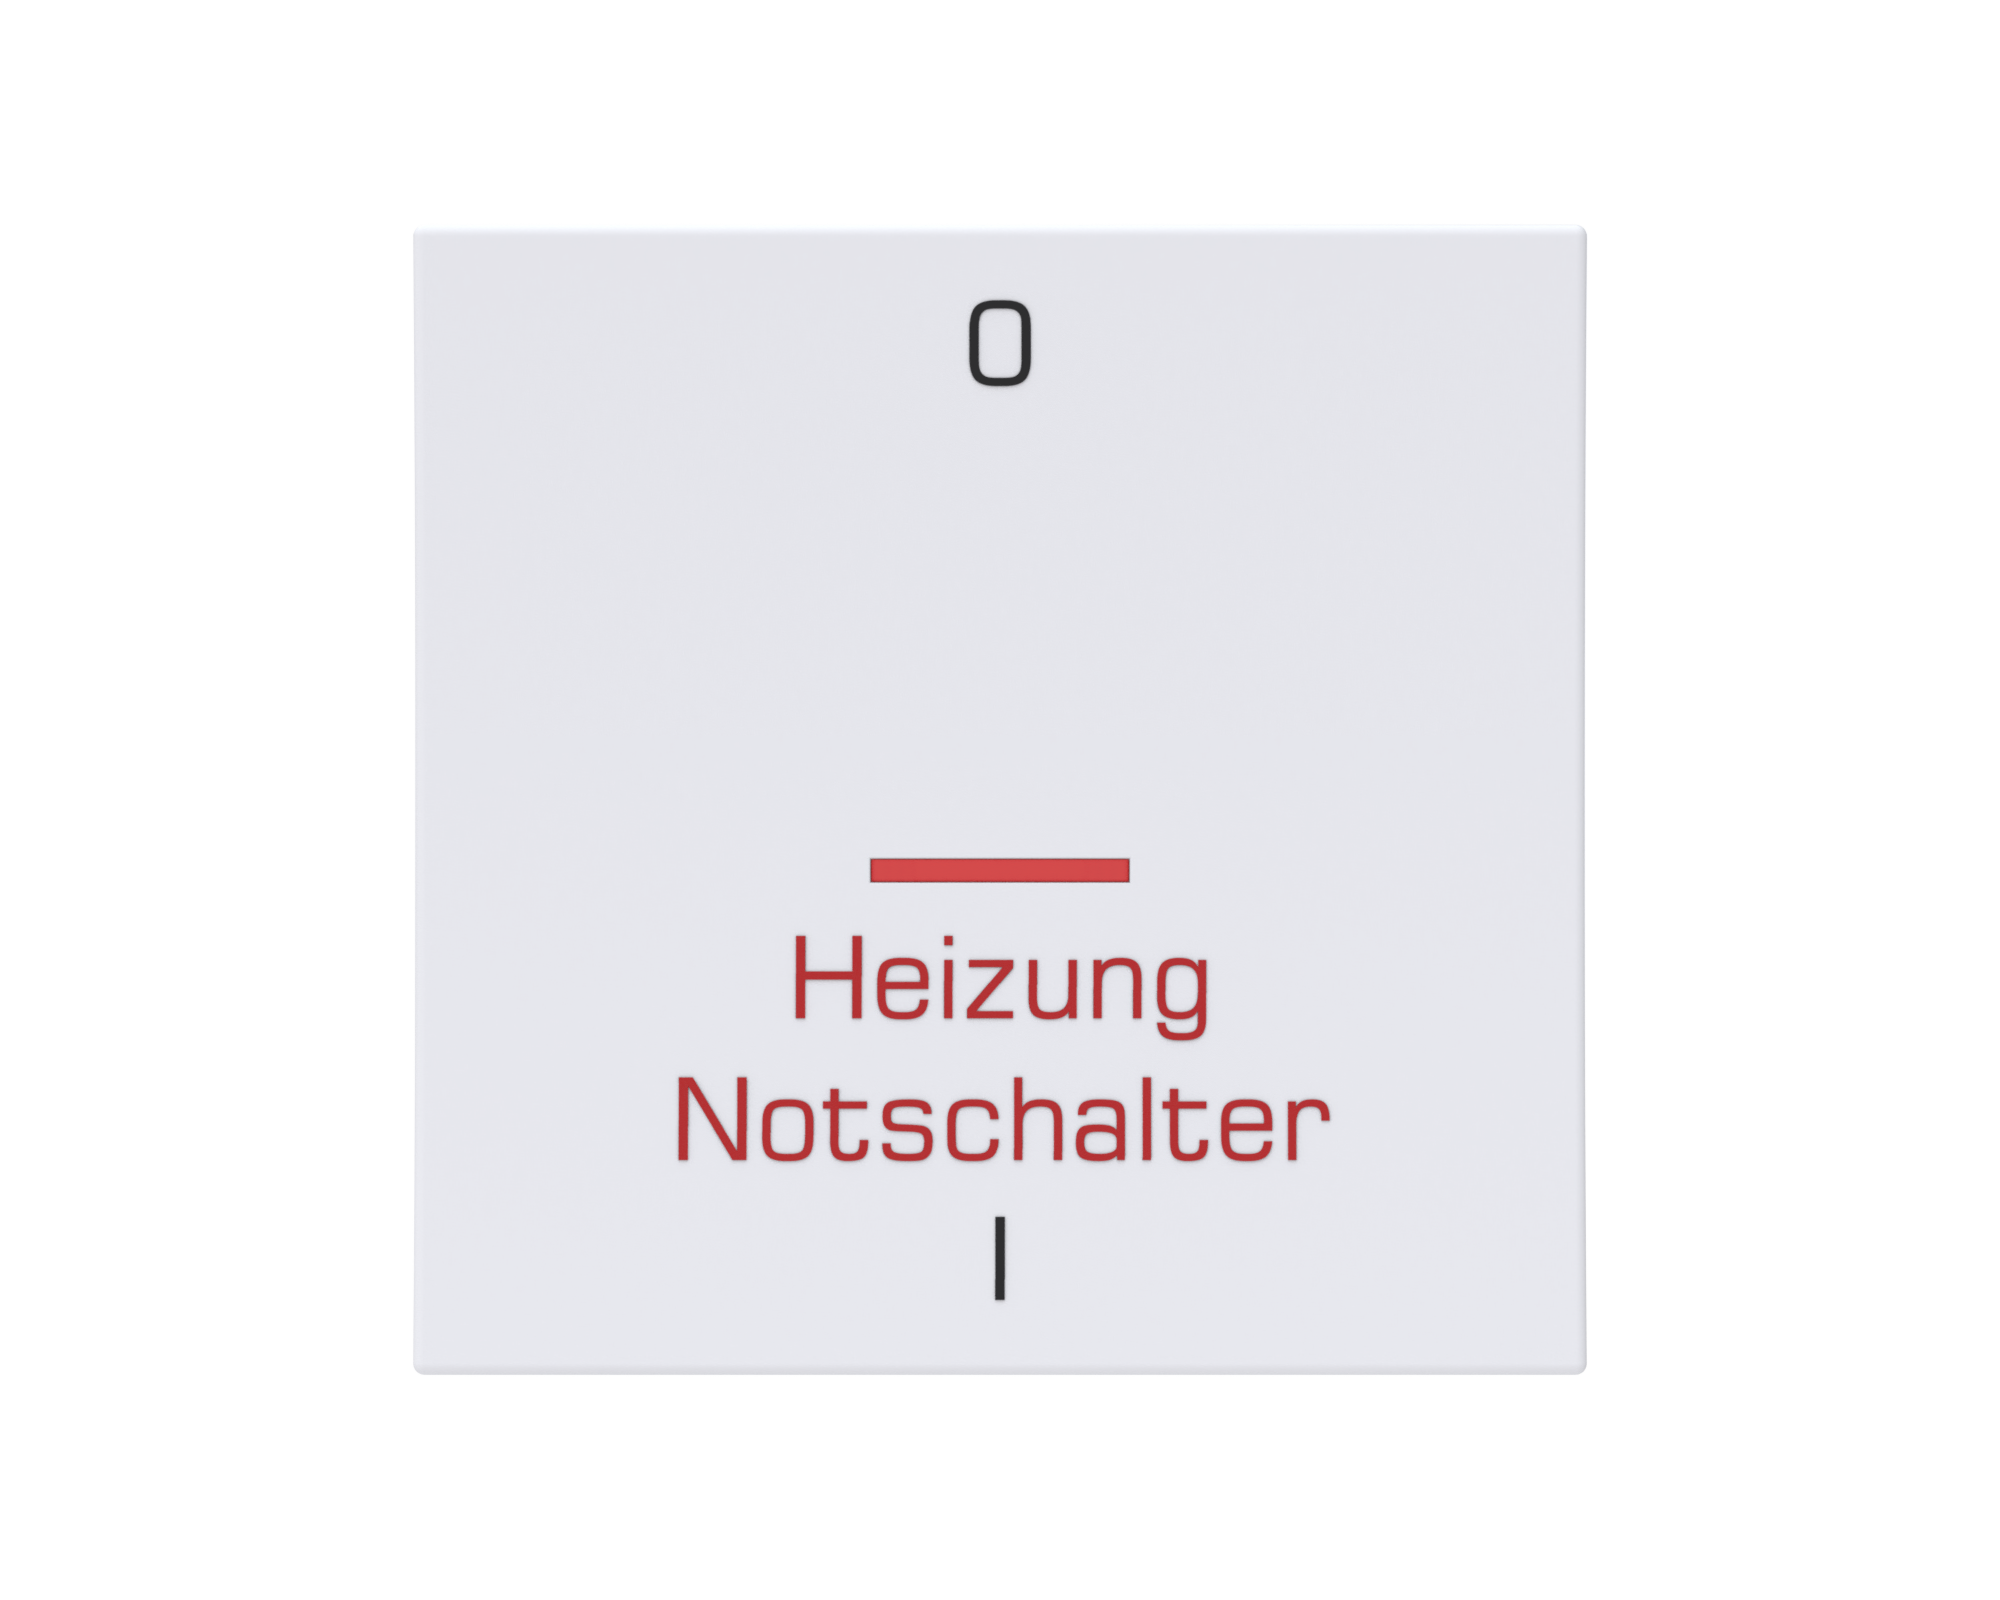 Eslohe Flächenwippe "Heizung Notschalter" mit Linse rot und Symbol 0 + I ultraweiß